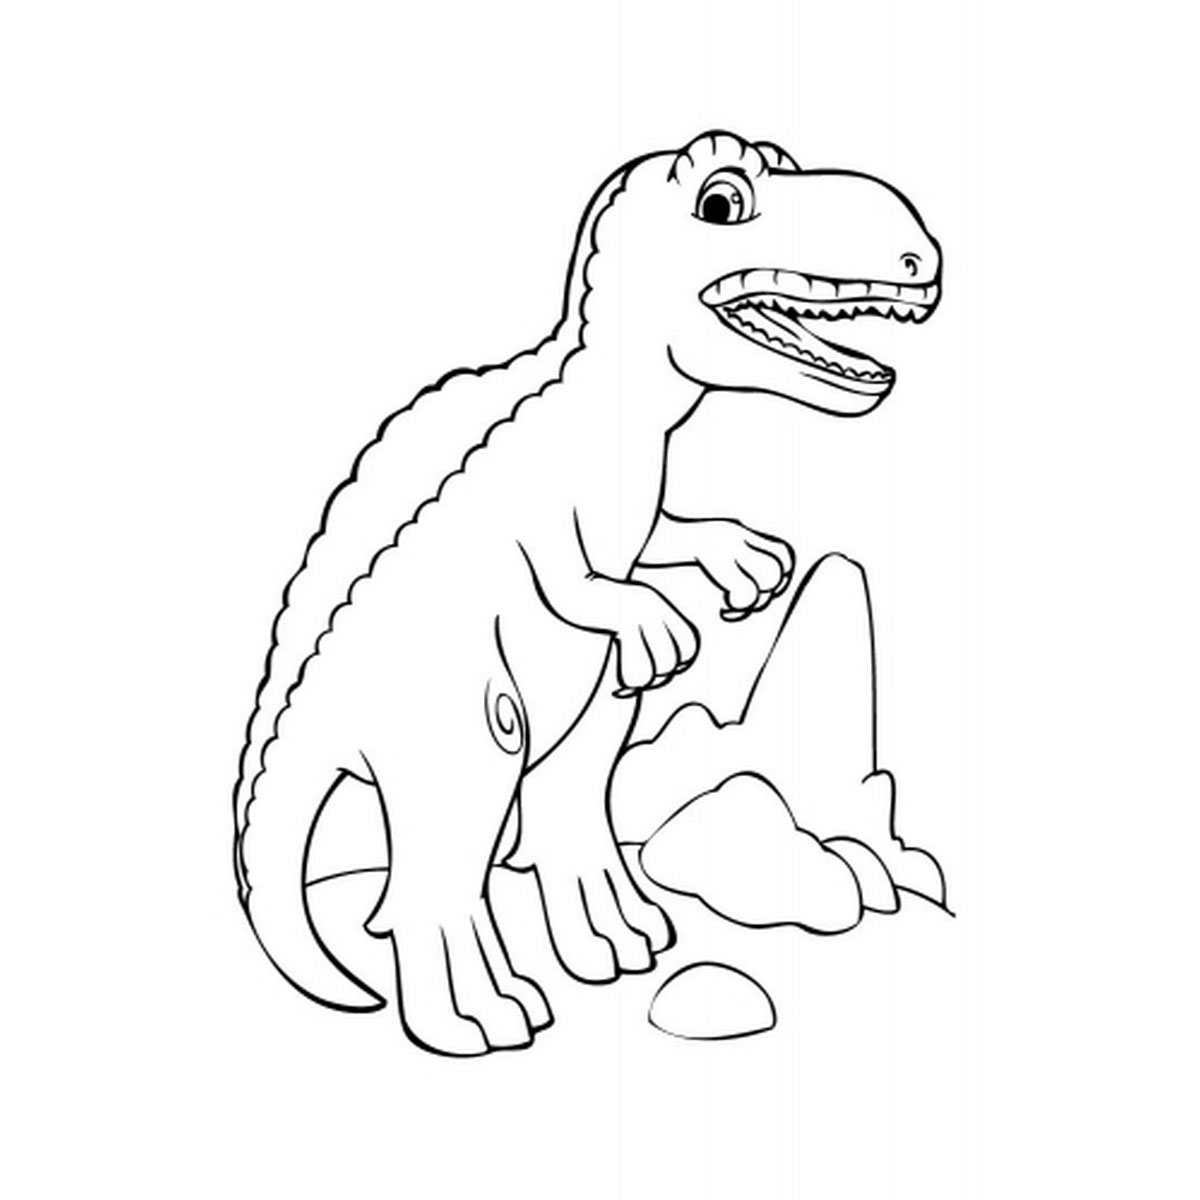 Tranh tô màu khủng long bạo chúa cho bé  29